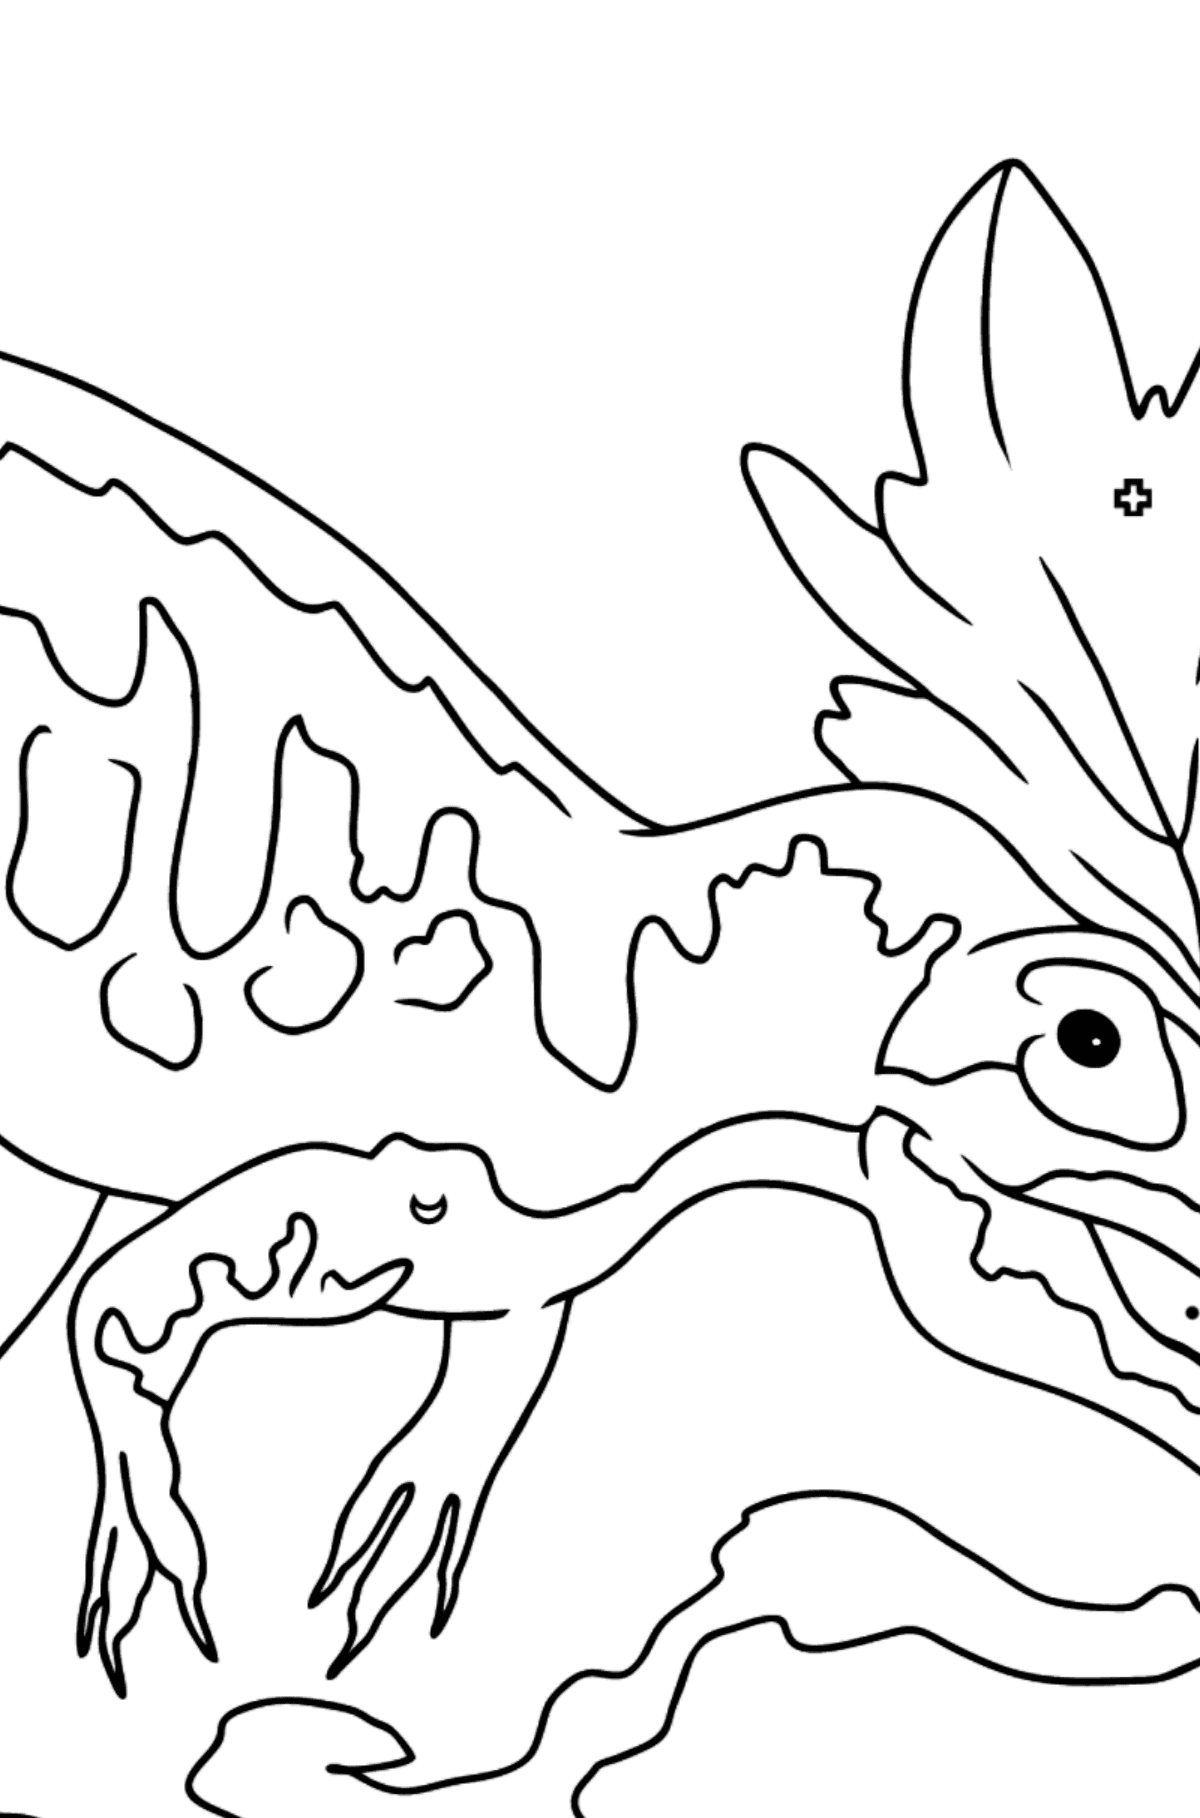 Tegning til fargelegging allosaurus (enkelt) - Fargelegge etter symboler og geometriske former for barn